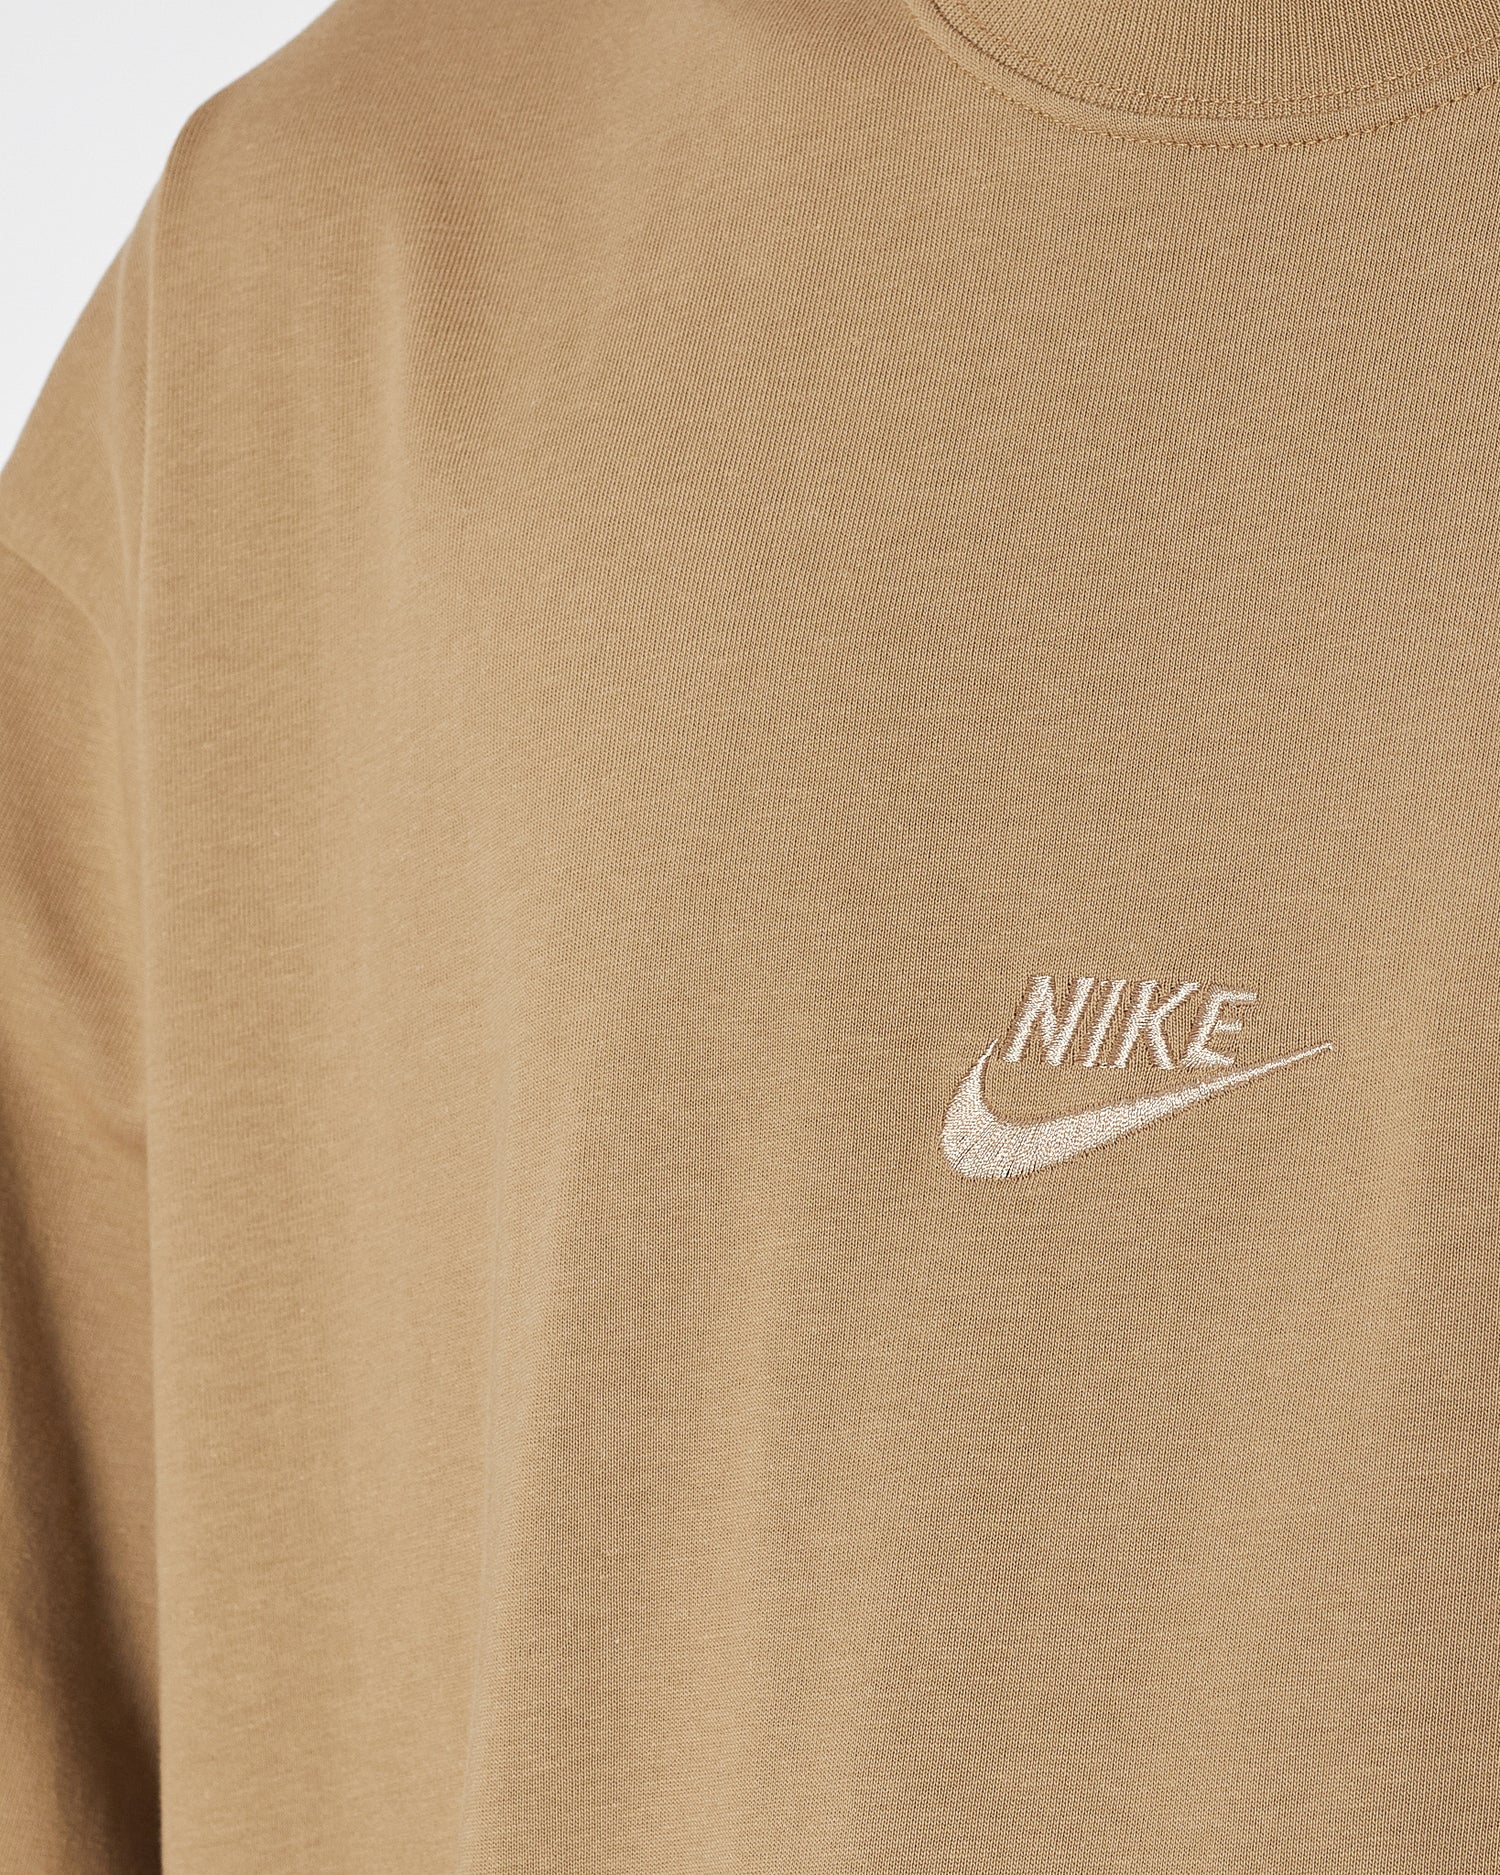 NIK Logo Embroidered Men Brown T-Shirt 16.90